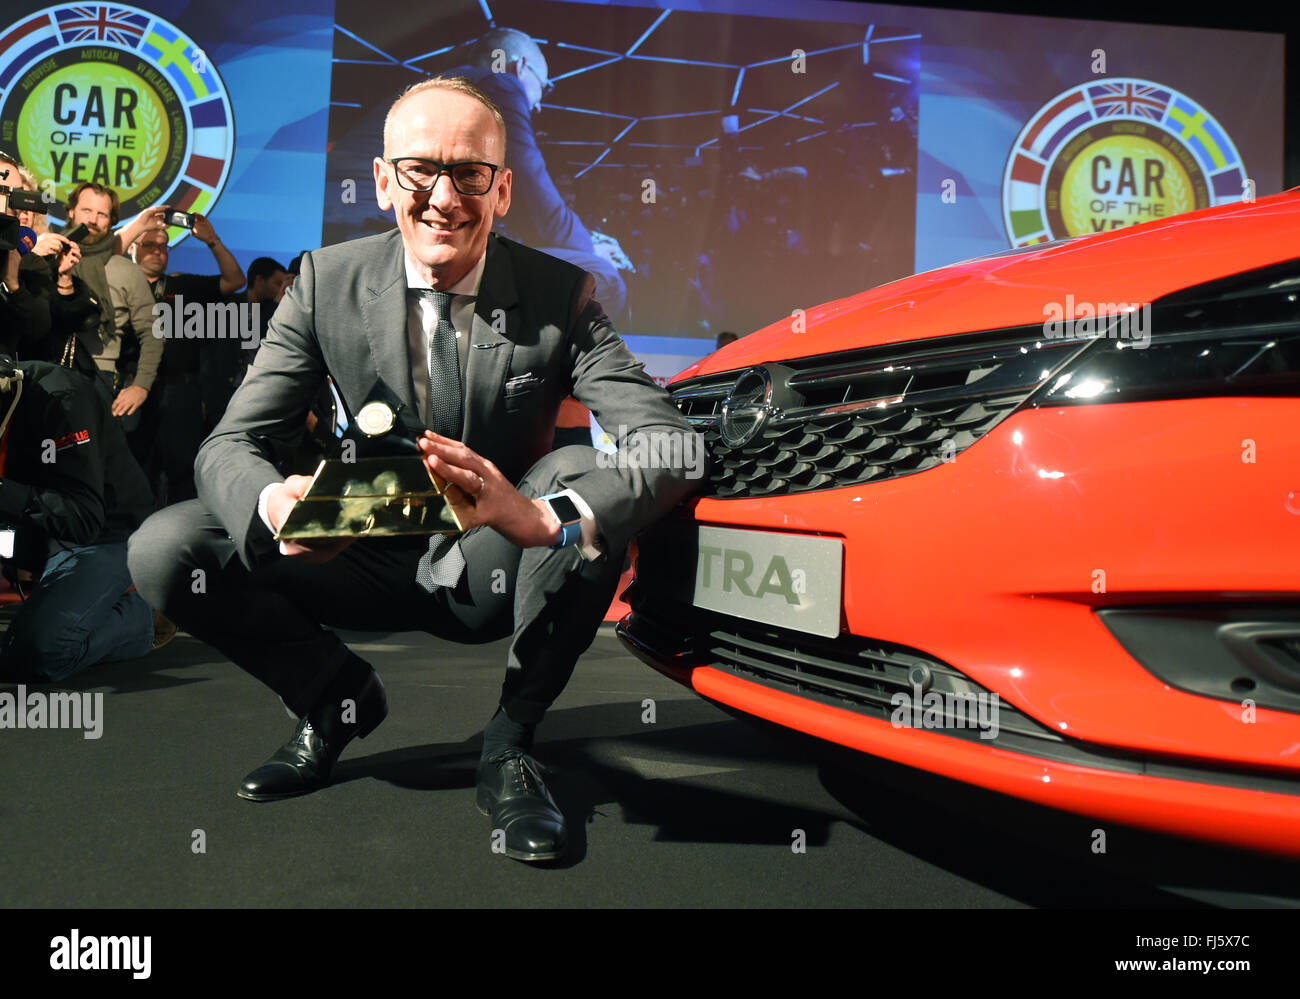 Genève, Suisse. Feb 29, 2016. Karl-Thomas Neumann, Président du directoire d'Opel, posant à côté d'une Opel Astra, plus tard, élu Voiture de l'année, sur la première journée de la presse au Salon International de l'Automobile à Genève, Suisse, 29 février 2016. PHOTO : ULI DECK/dpa/Alamy Live News Banque D'Images